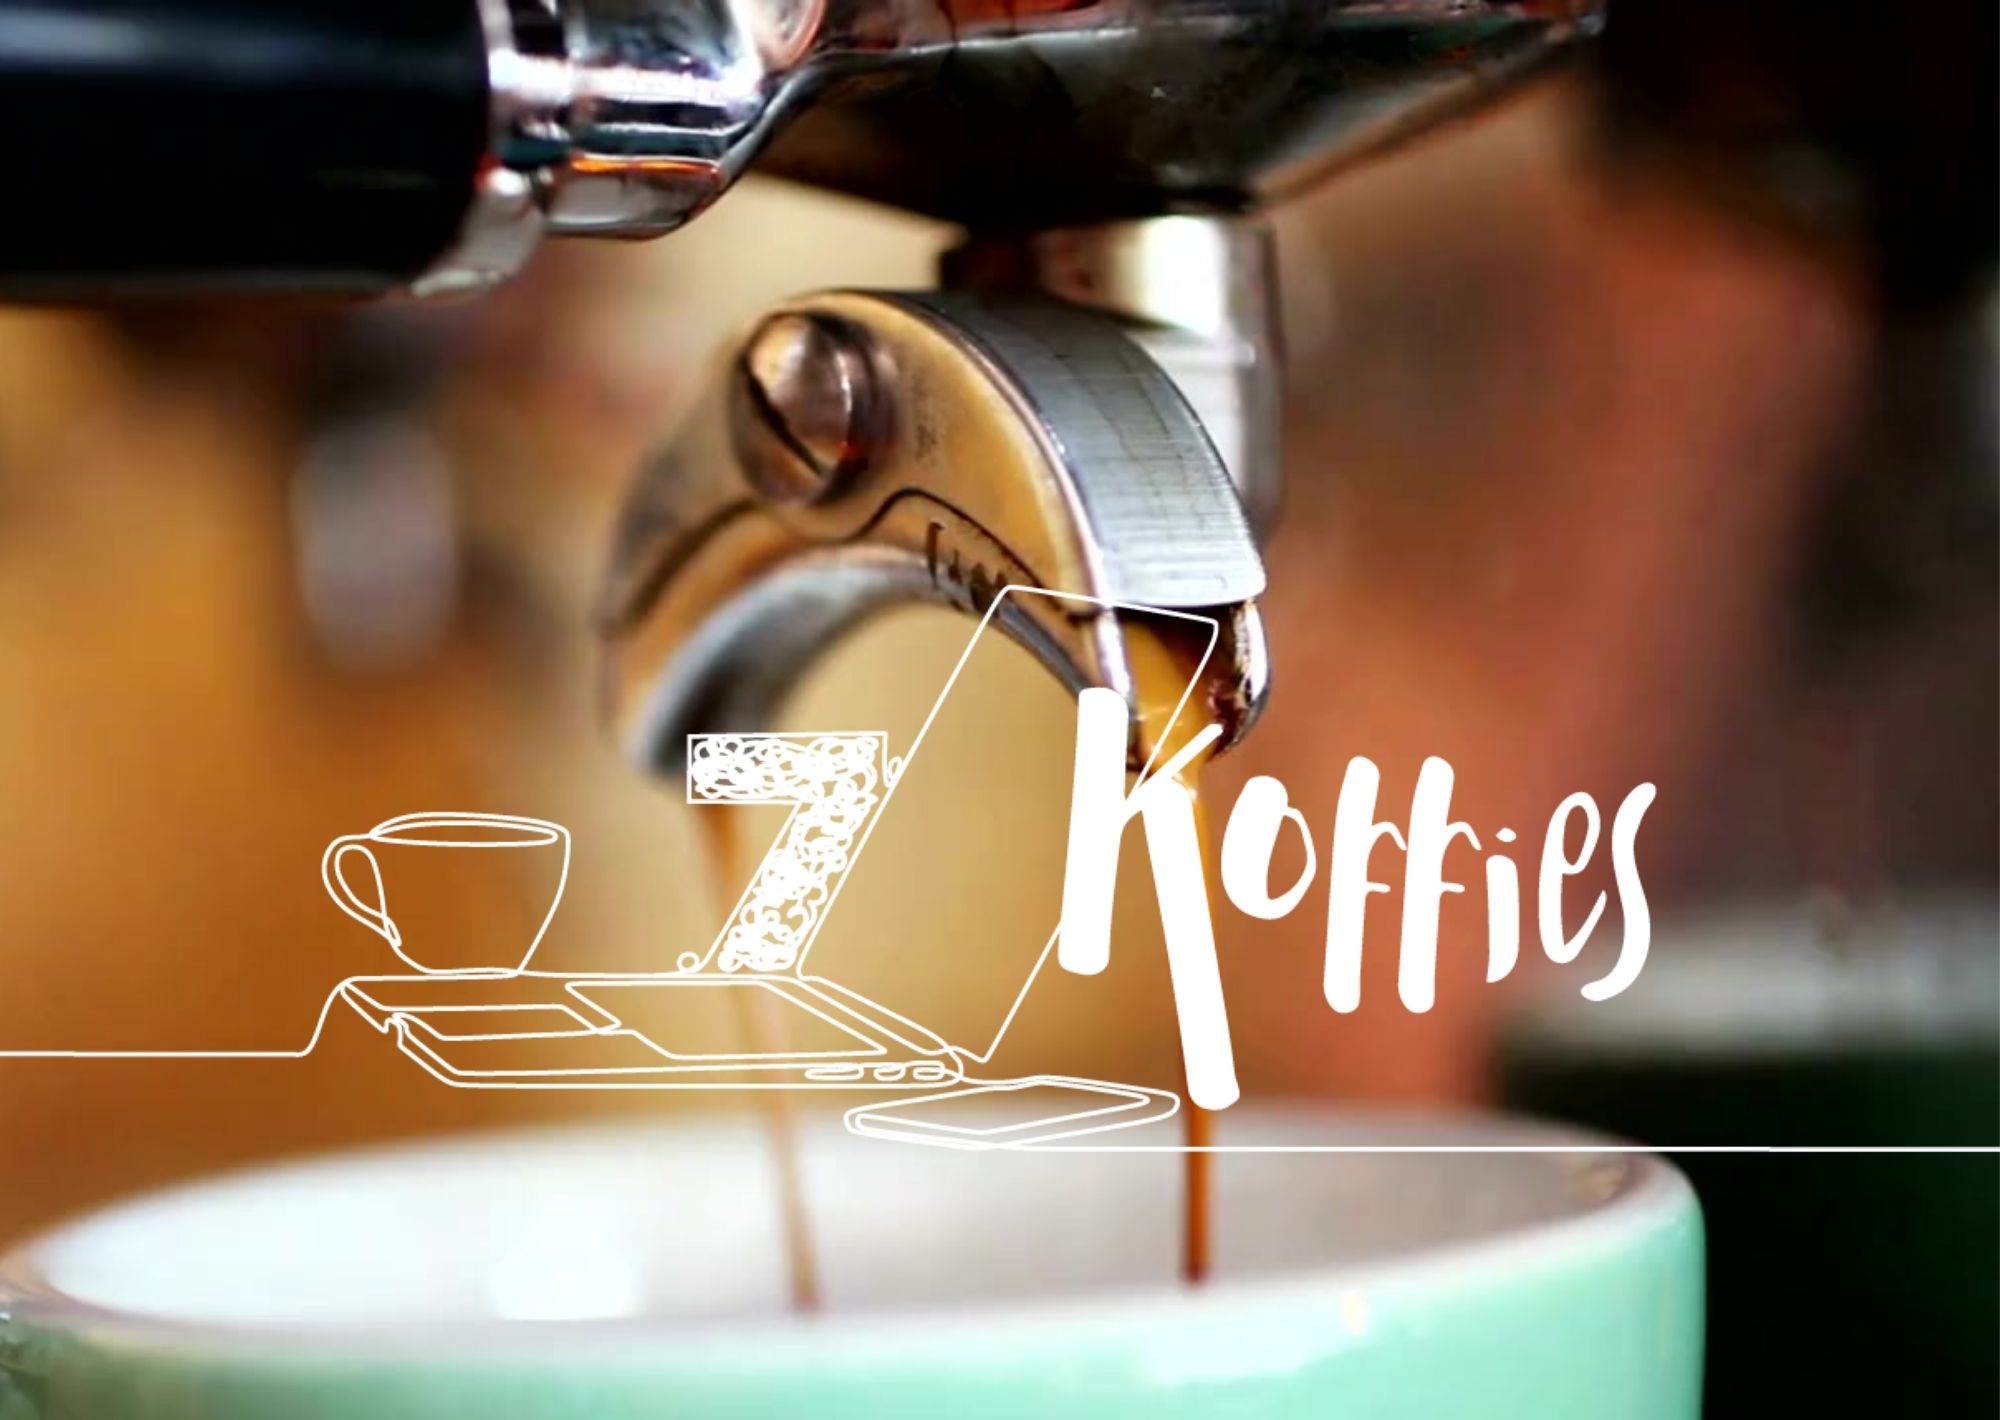 ‘7 Koffies’: Start